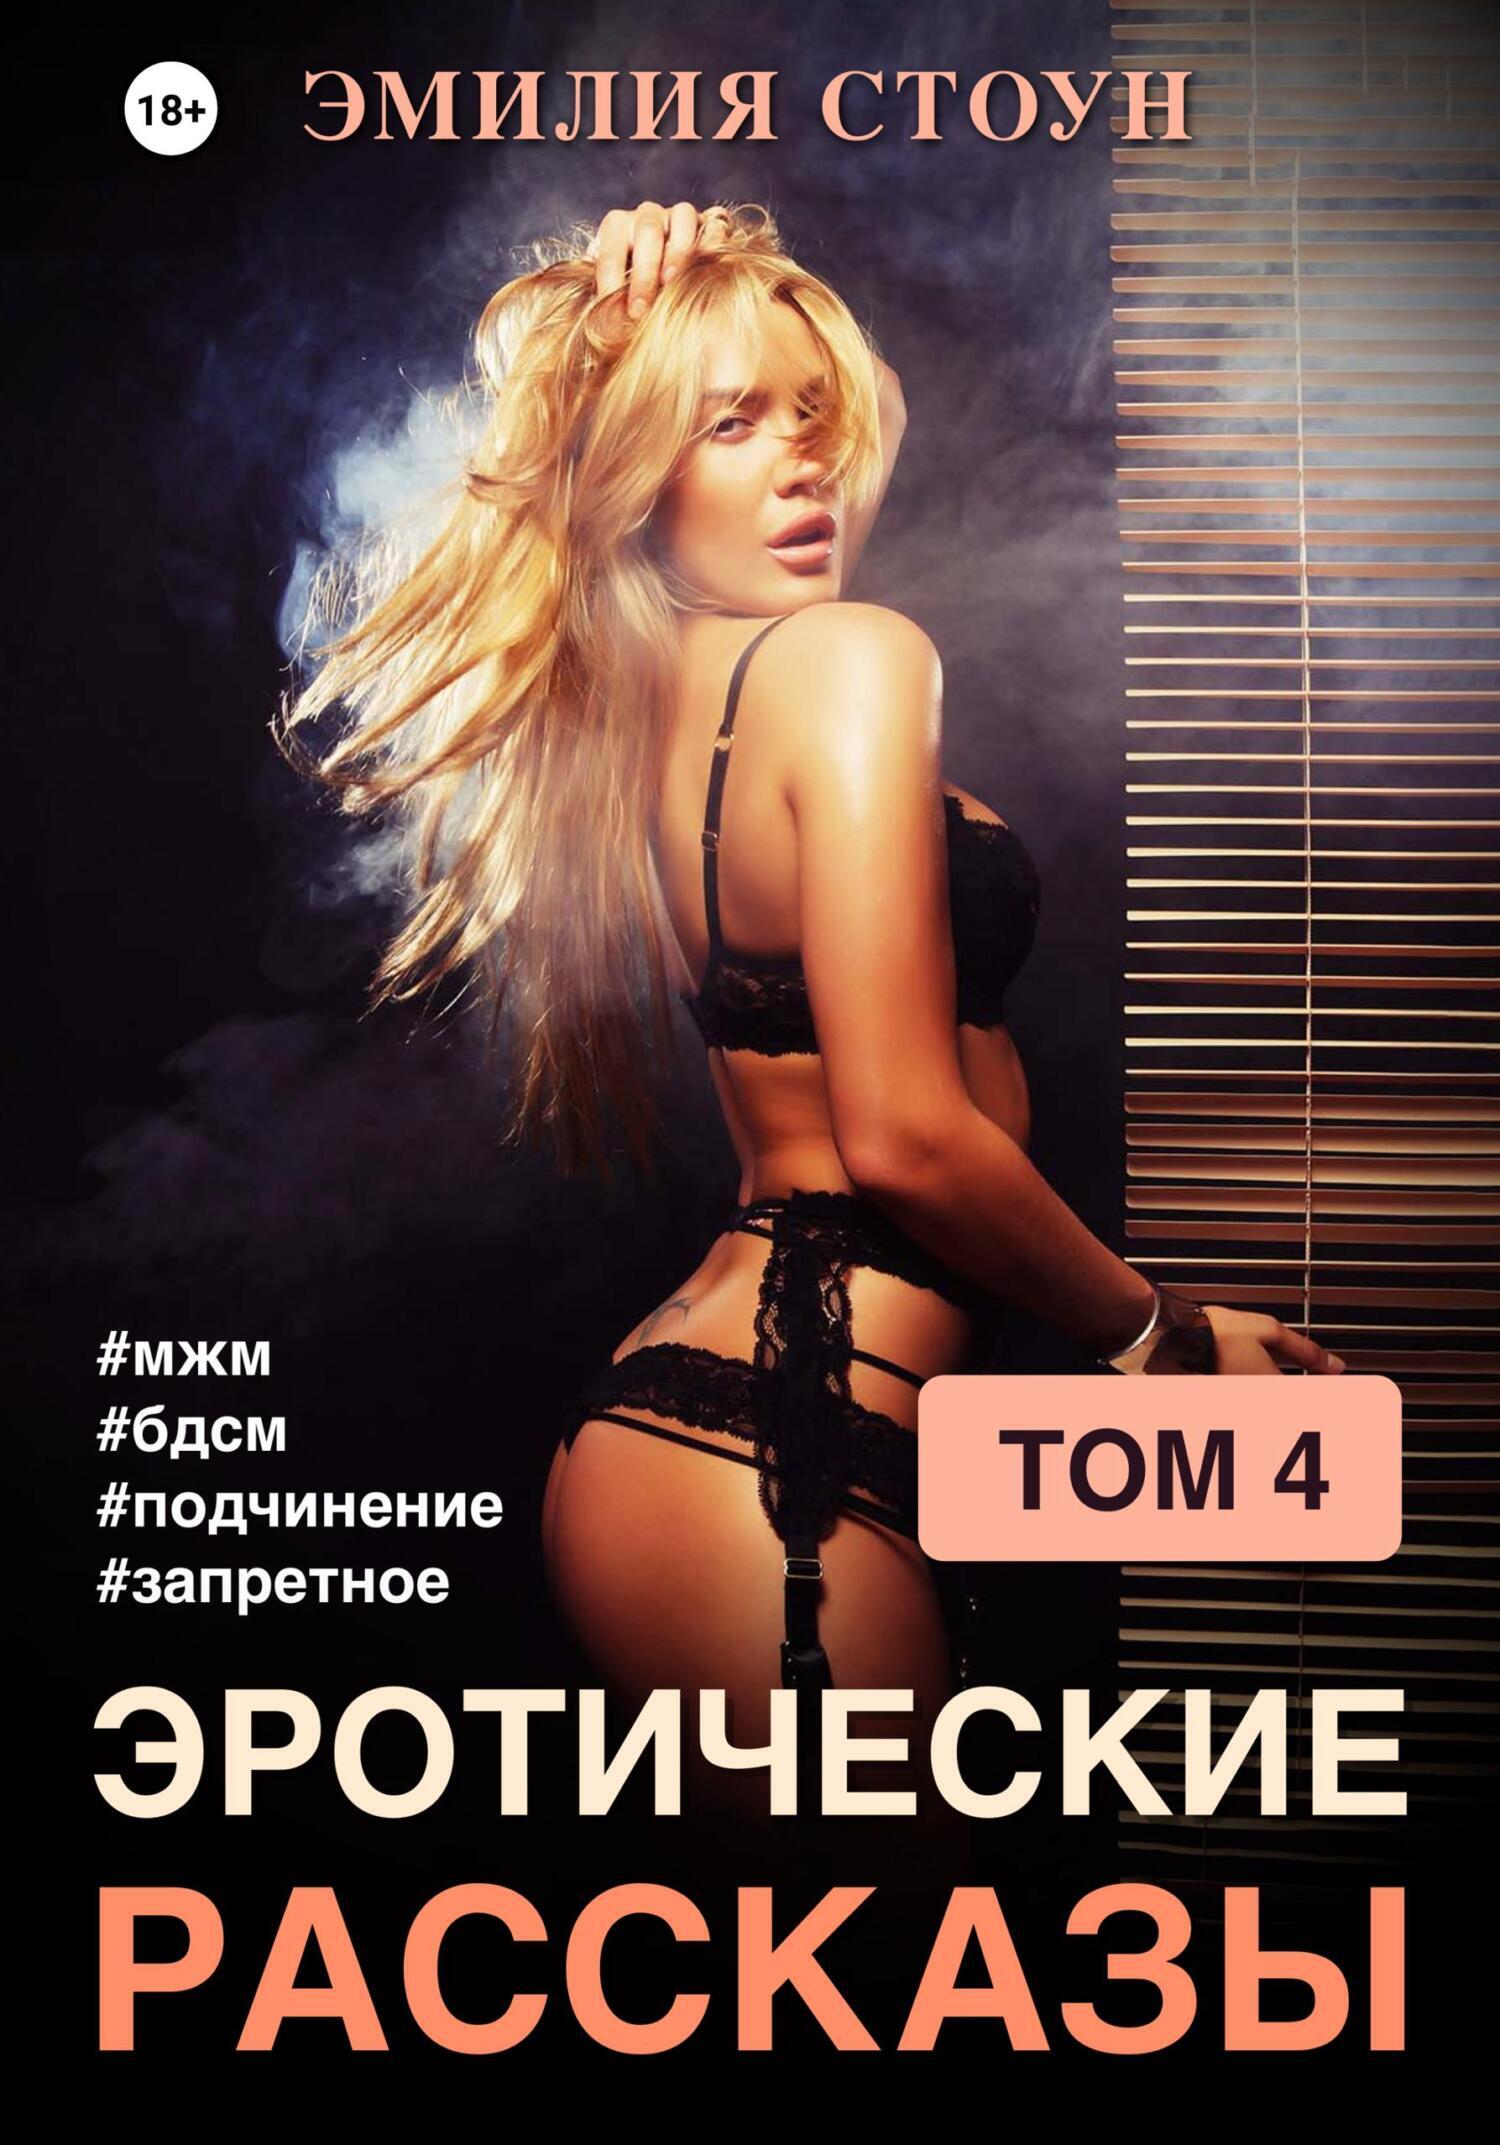 Запрещенный извращенный секс - порно видео на chelmass.ru